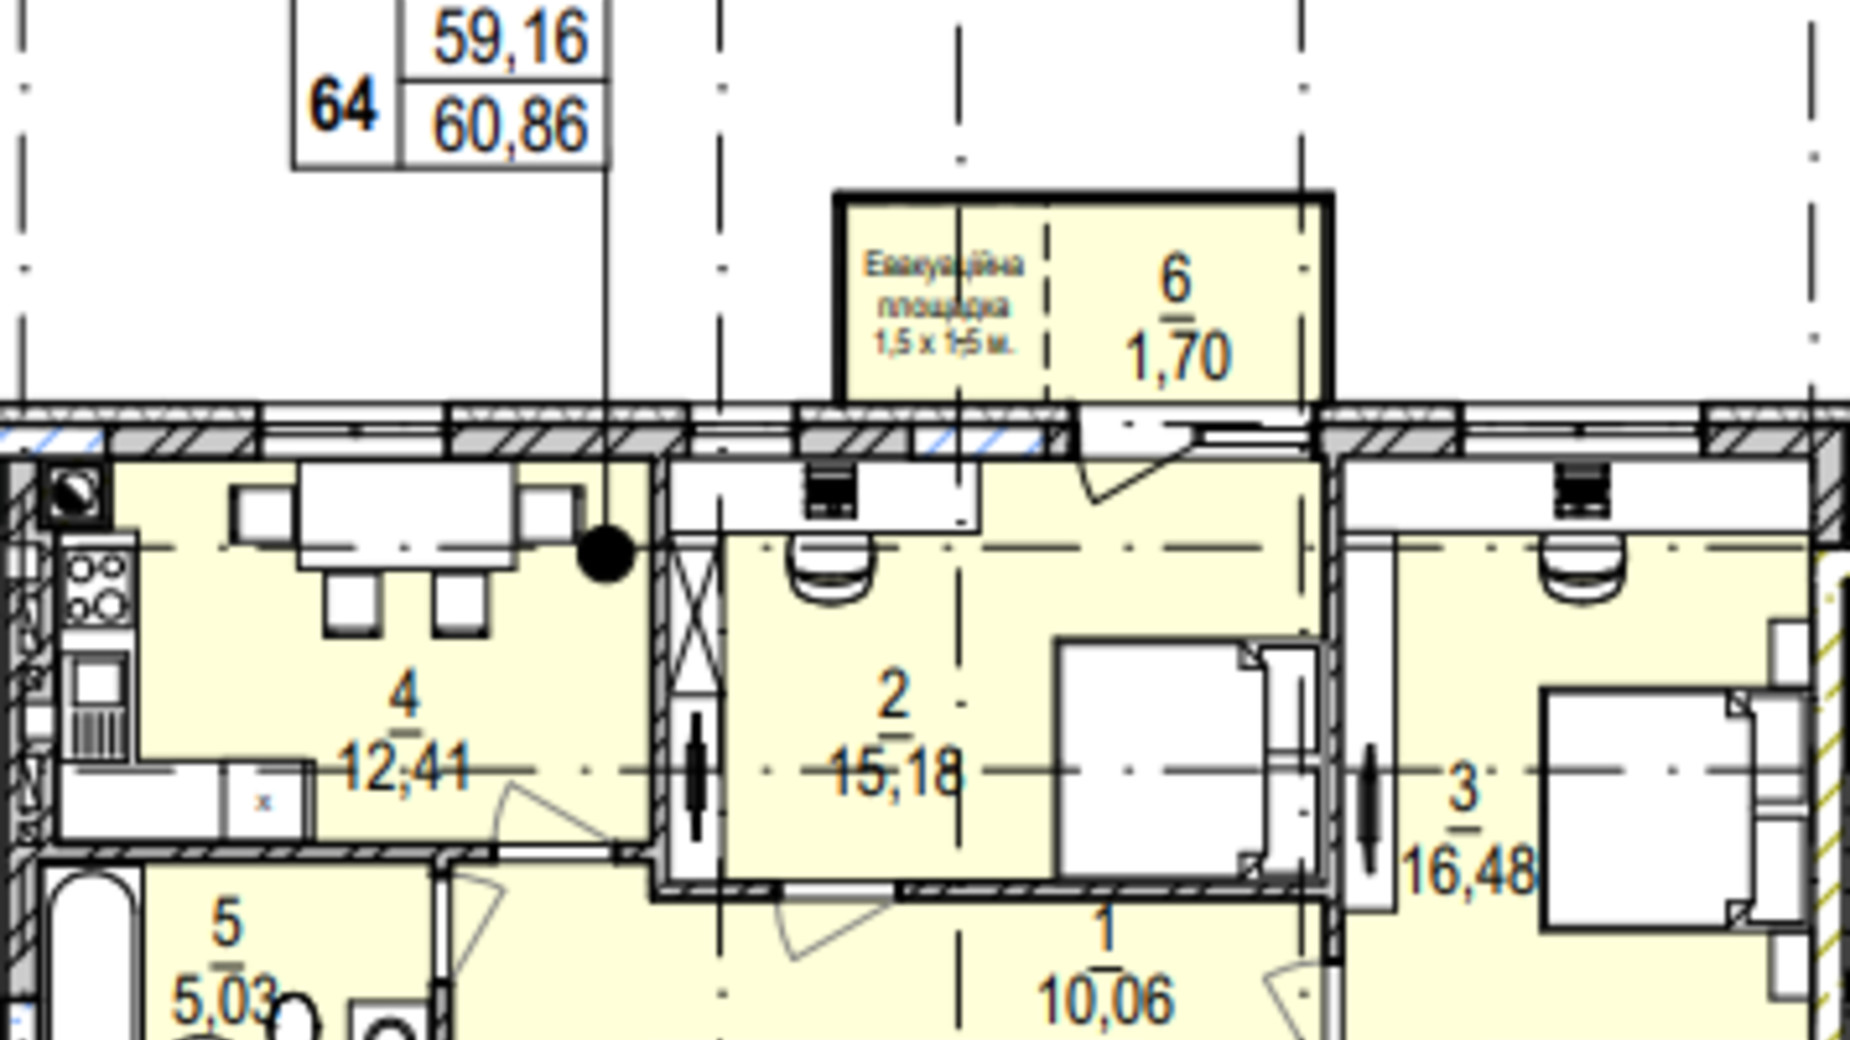 Планування 2-кімнатної квартири в ЖК Південний Deluxe 60.86 м², фото 605000